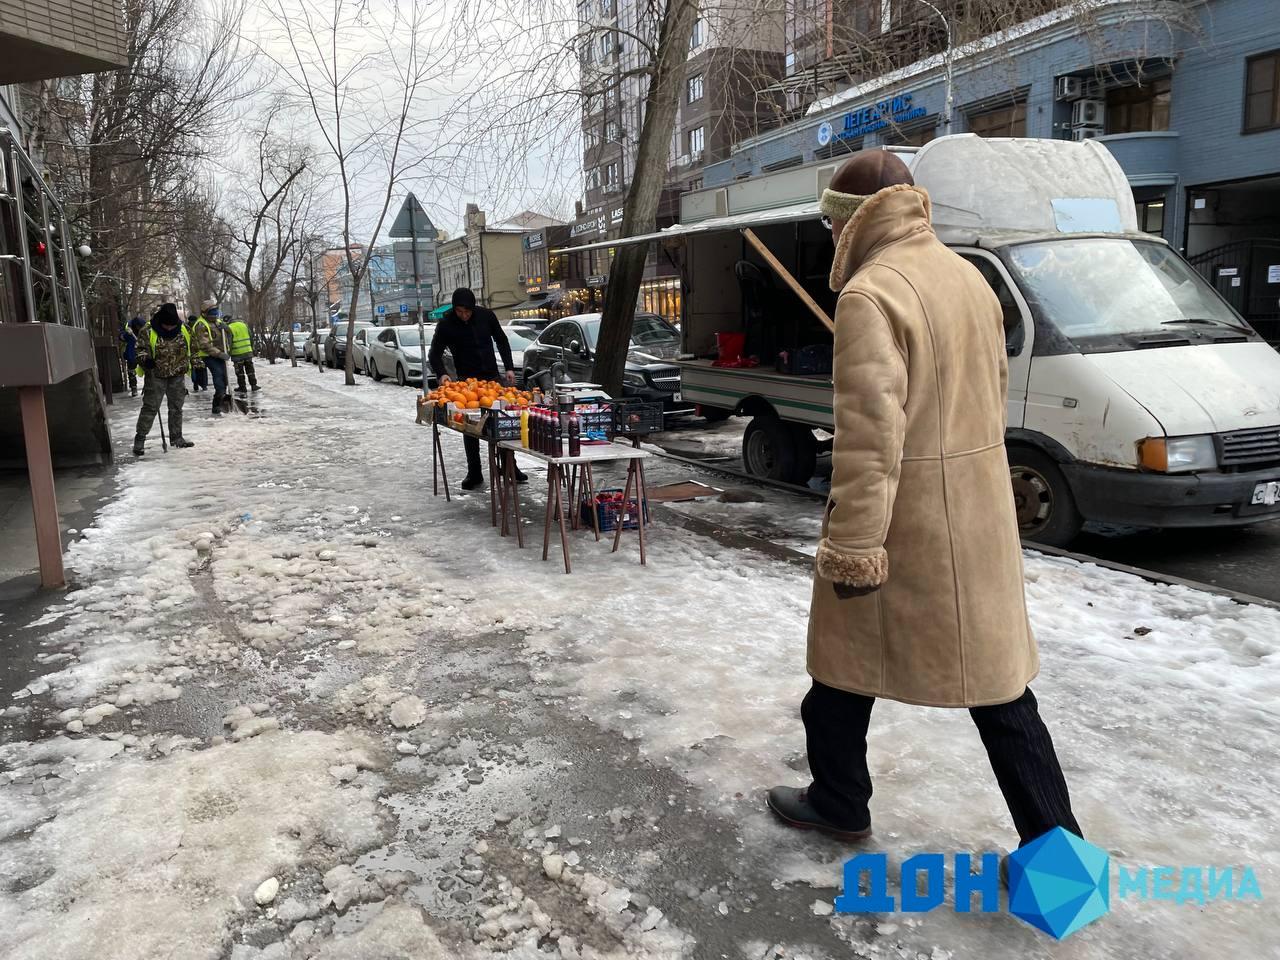 ДОН24 - Без прикрас: фотокорреспондент ИА «ДОН 24» запечатлел ледяные улицы  центра Ростова